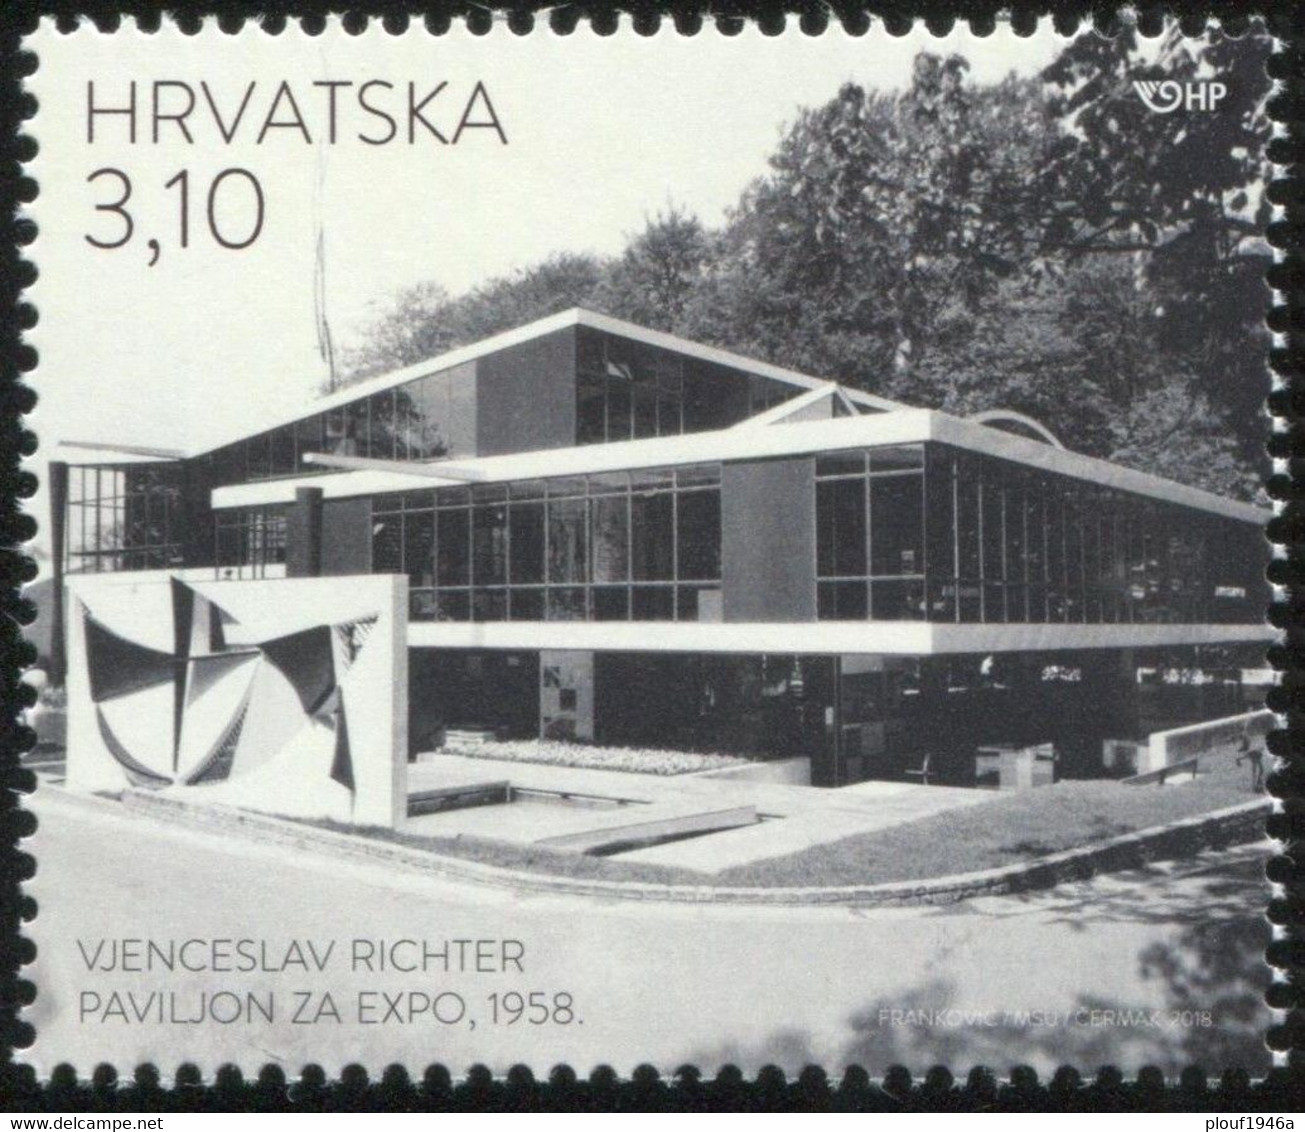 1958 - Collection complète Expo 58 (**) avec Poste aérienne, Blocs et 1 FDC Etats-Unis + Croatie 2018 (architecte)